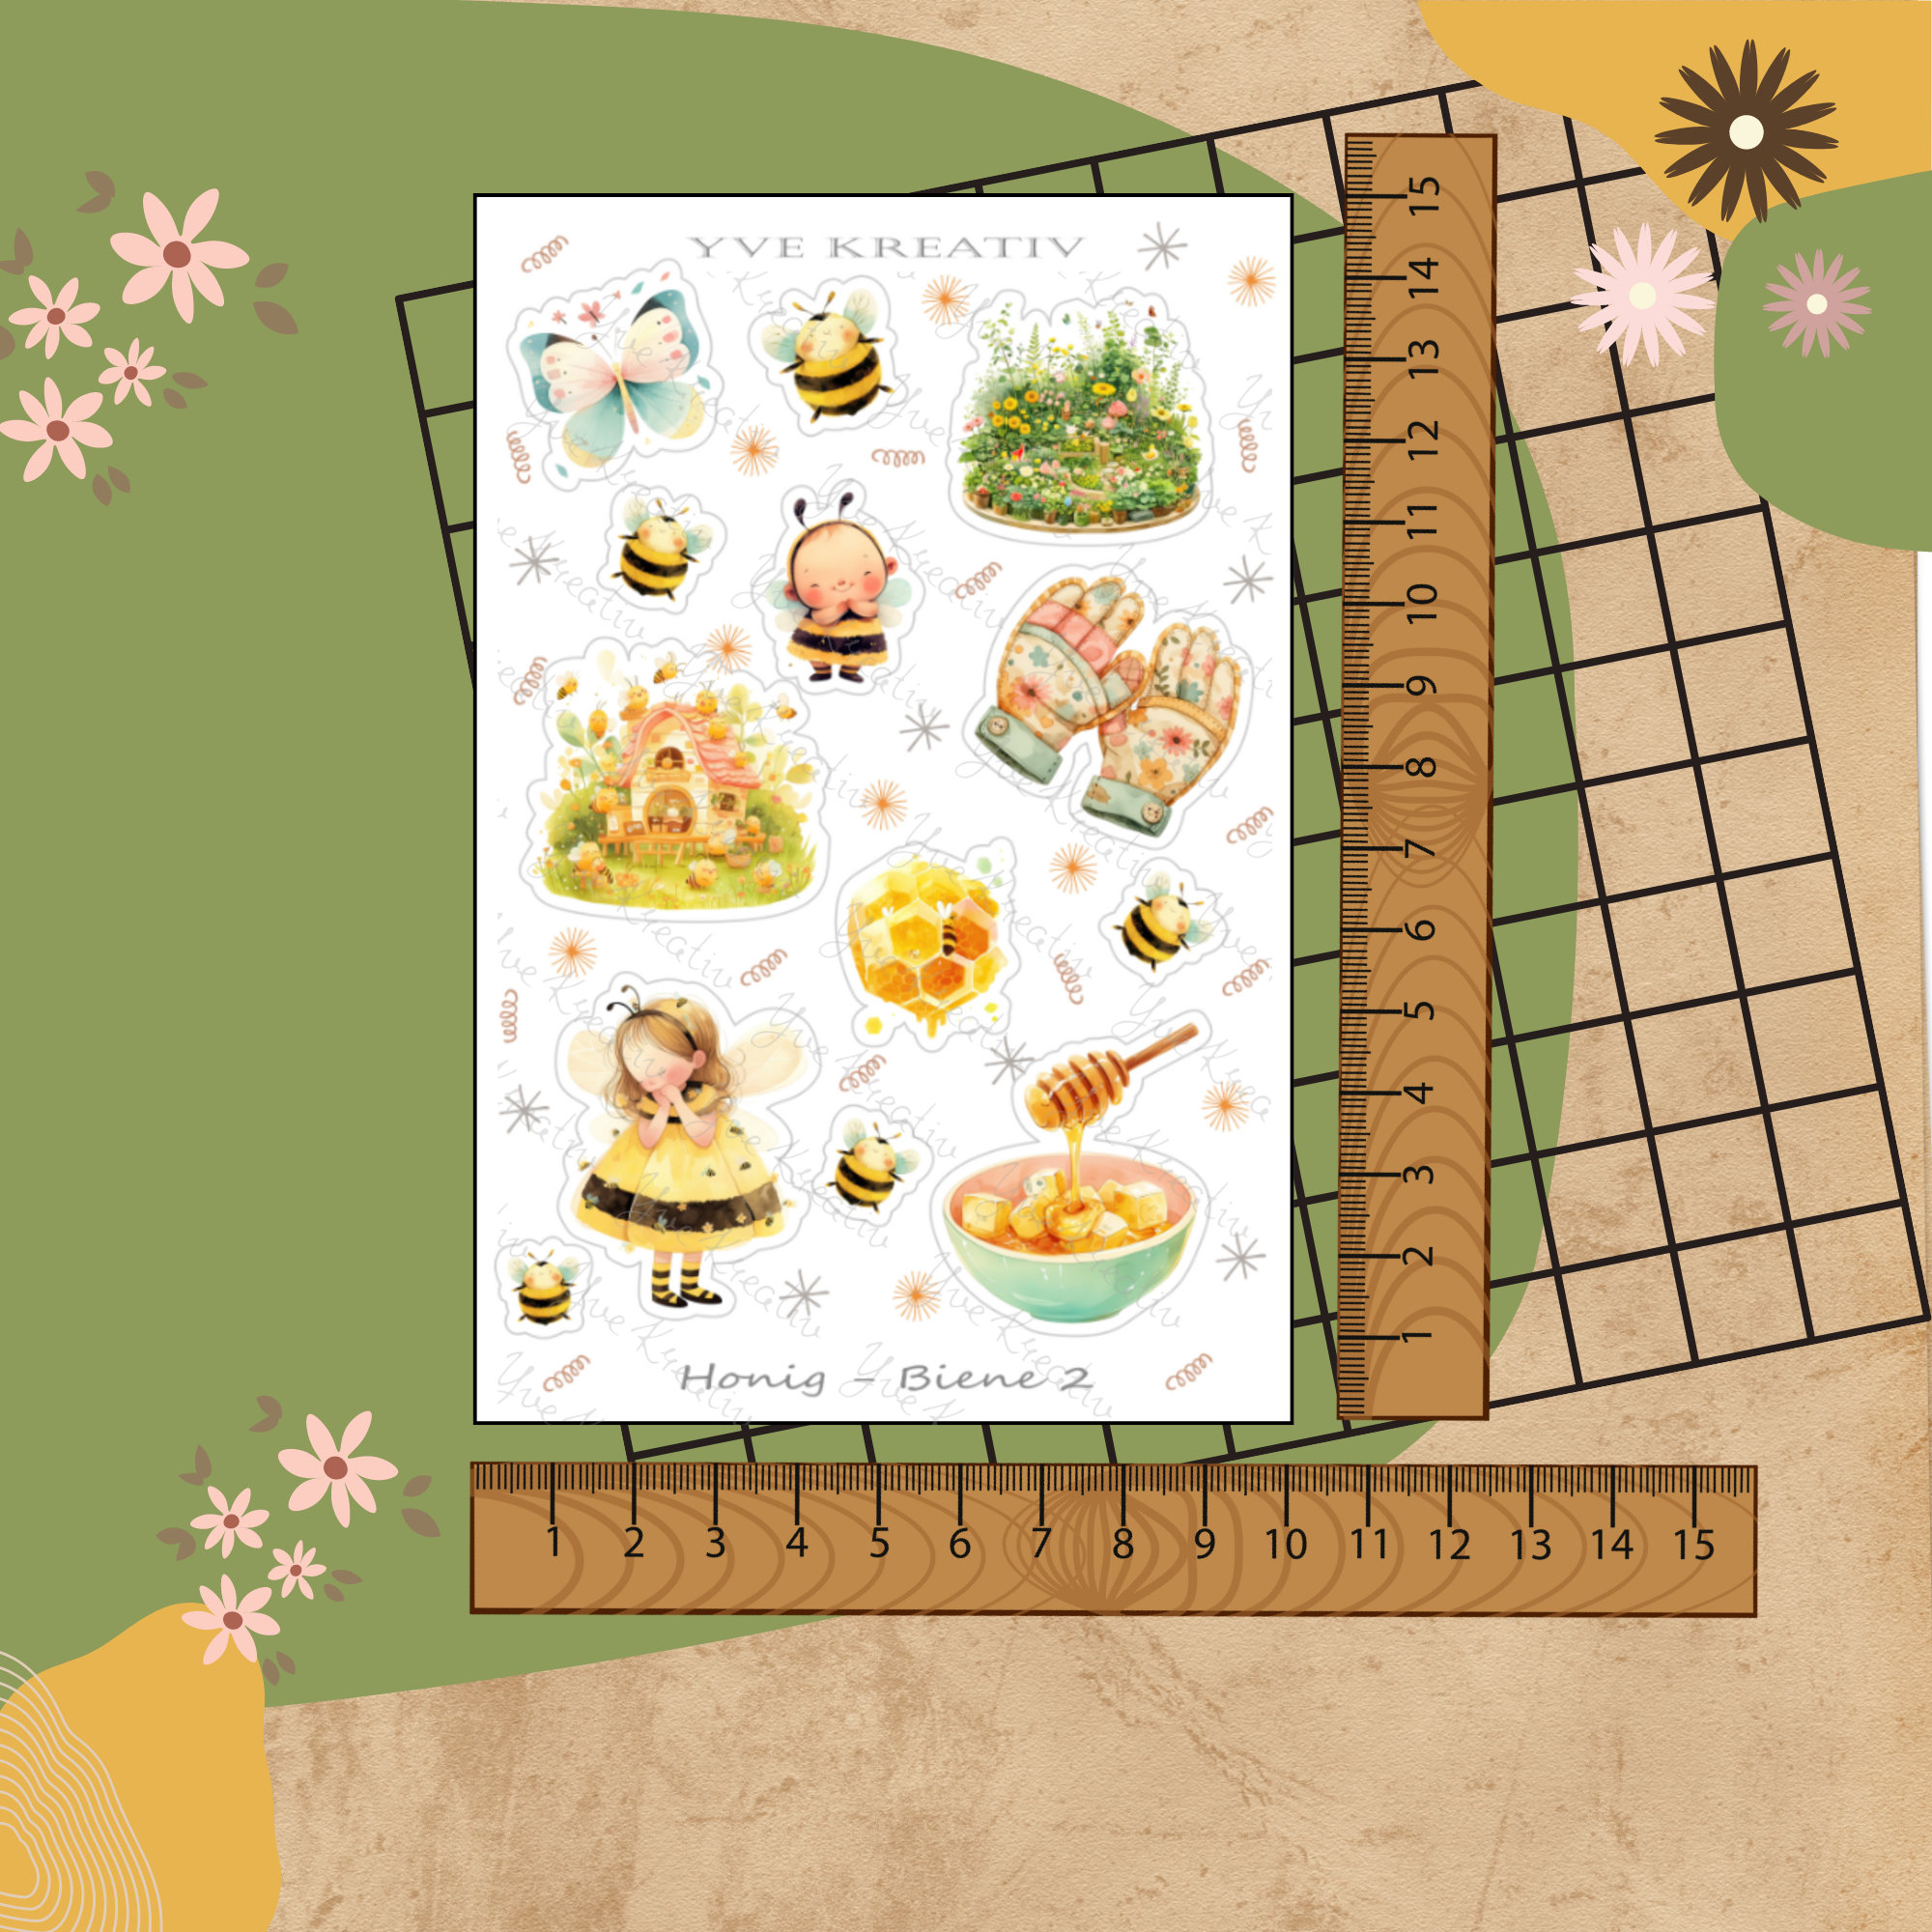 Stickerbogen " Biene Honig Honigbiene Frühling" | Sticker Set - Aufkleber 3 Sticker Bogen zur Auswahl in Weiß - Transparent - Matt - Glanz